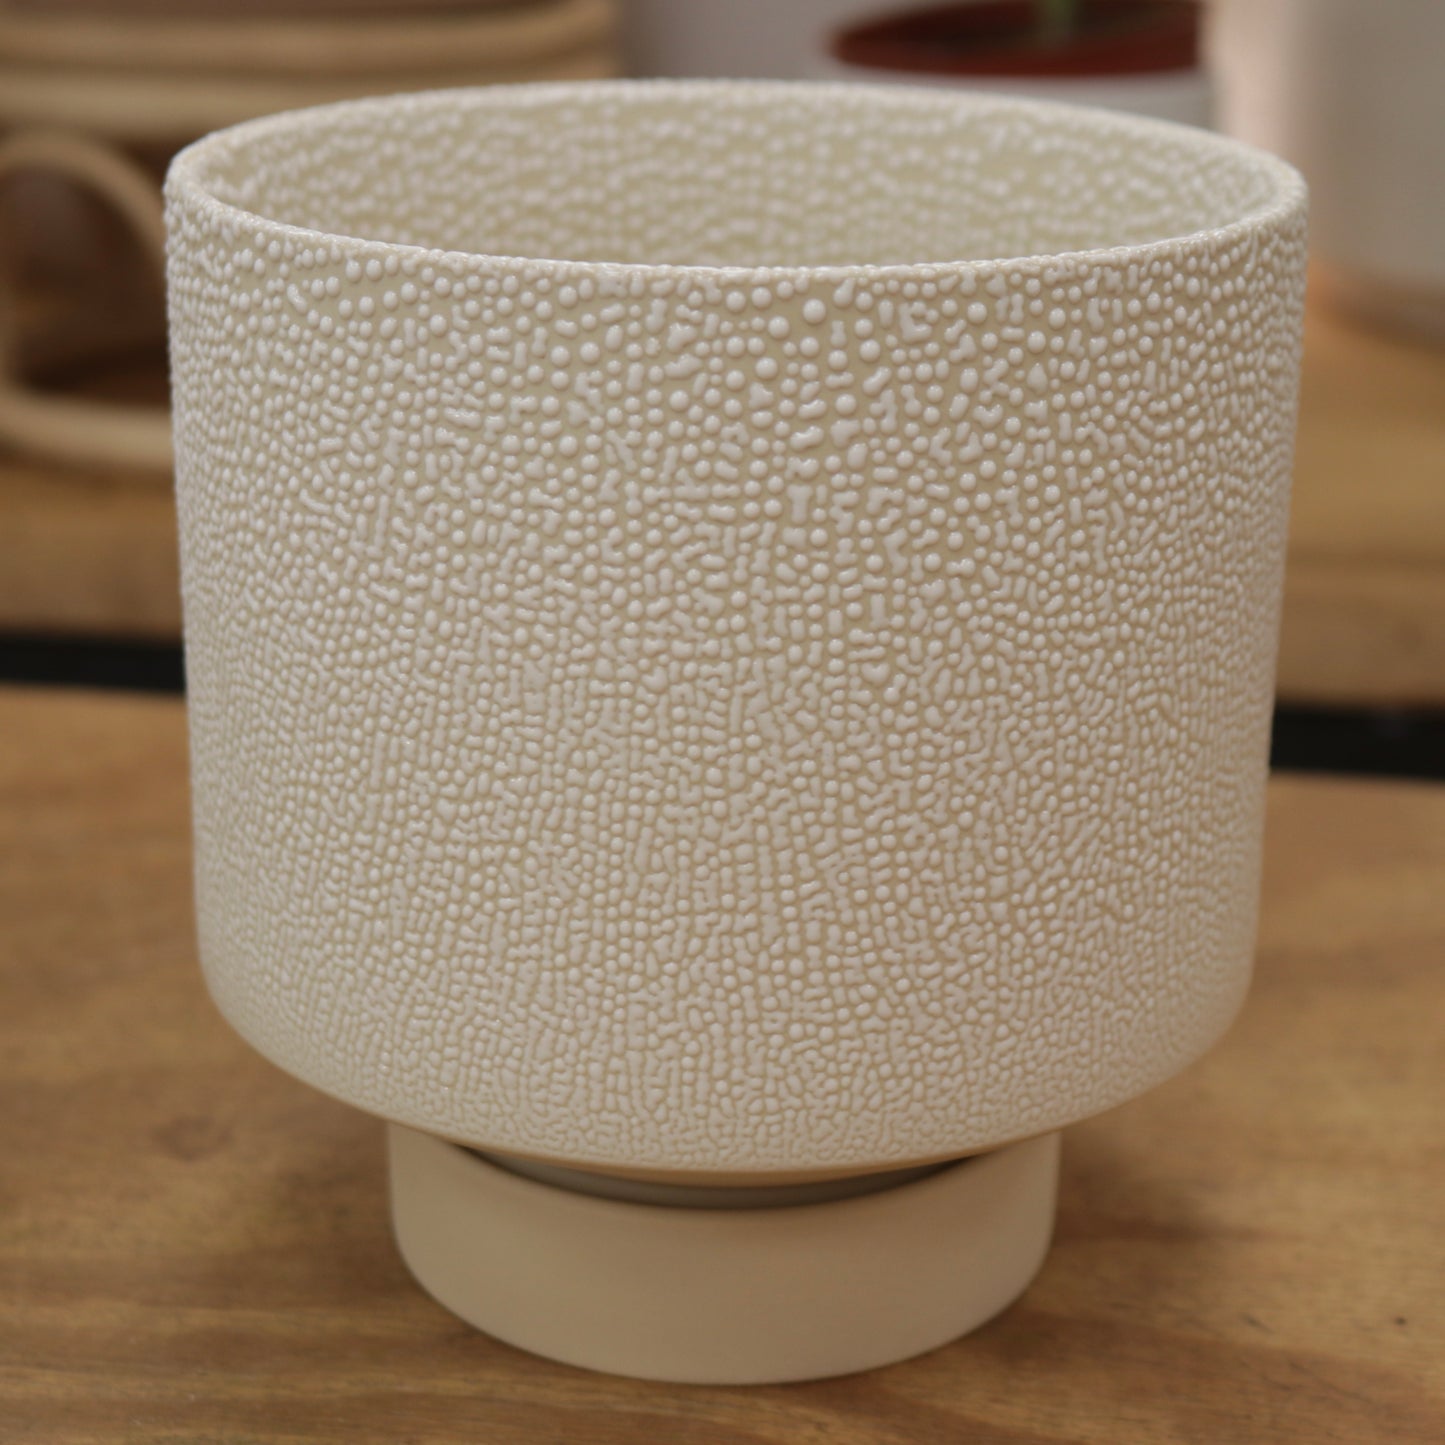 Ceramic Planter with Saucer